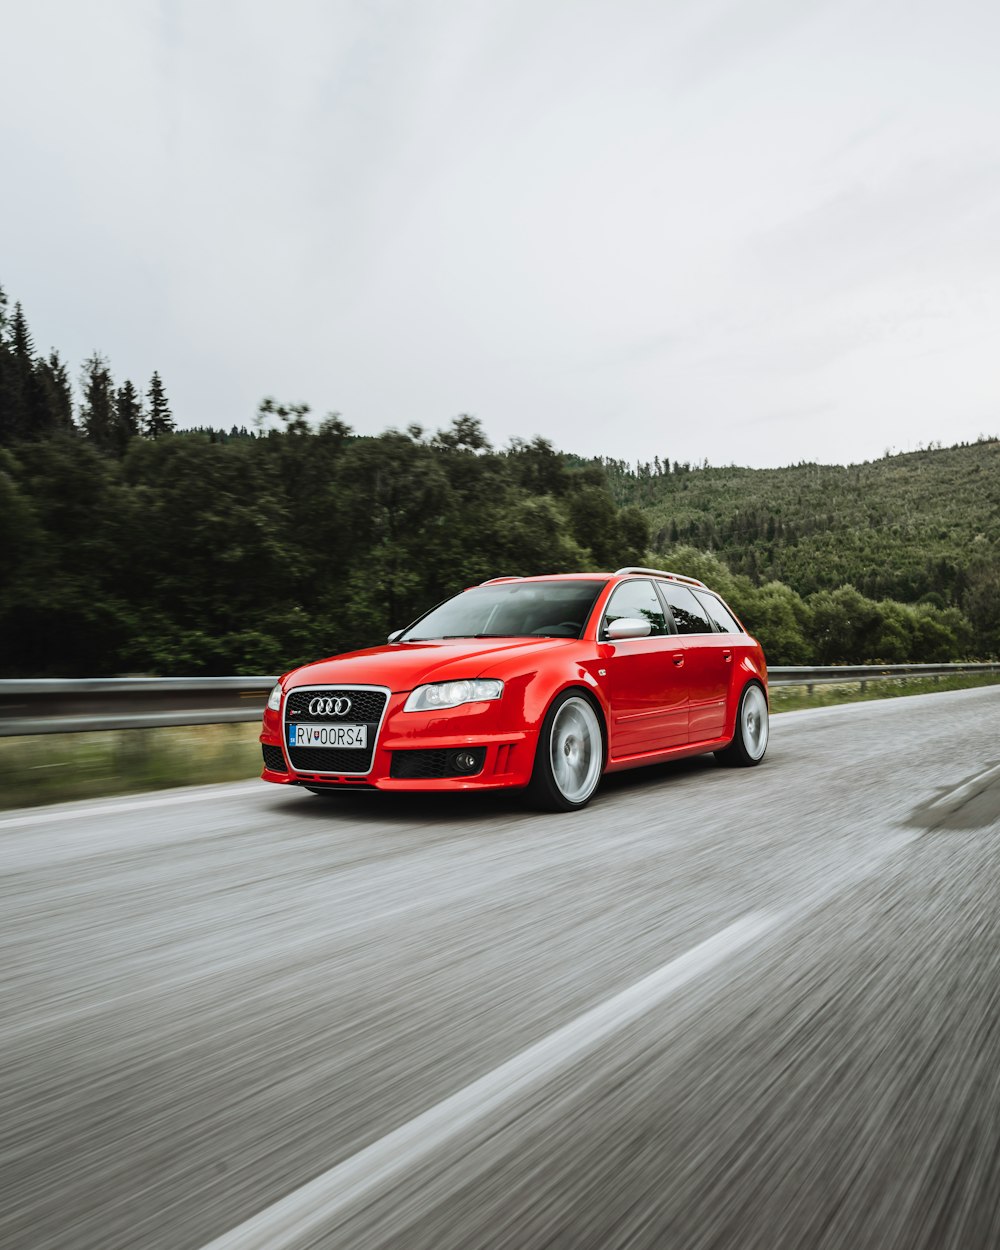 Audi A 4 rouge sur la route pendant la journée